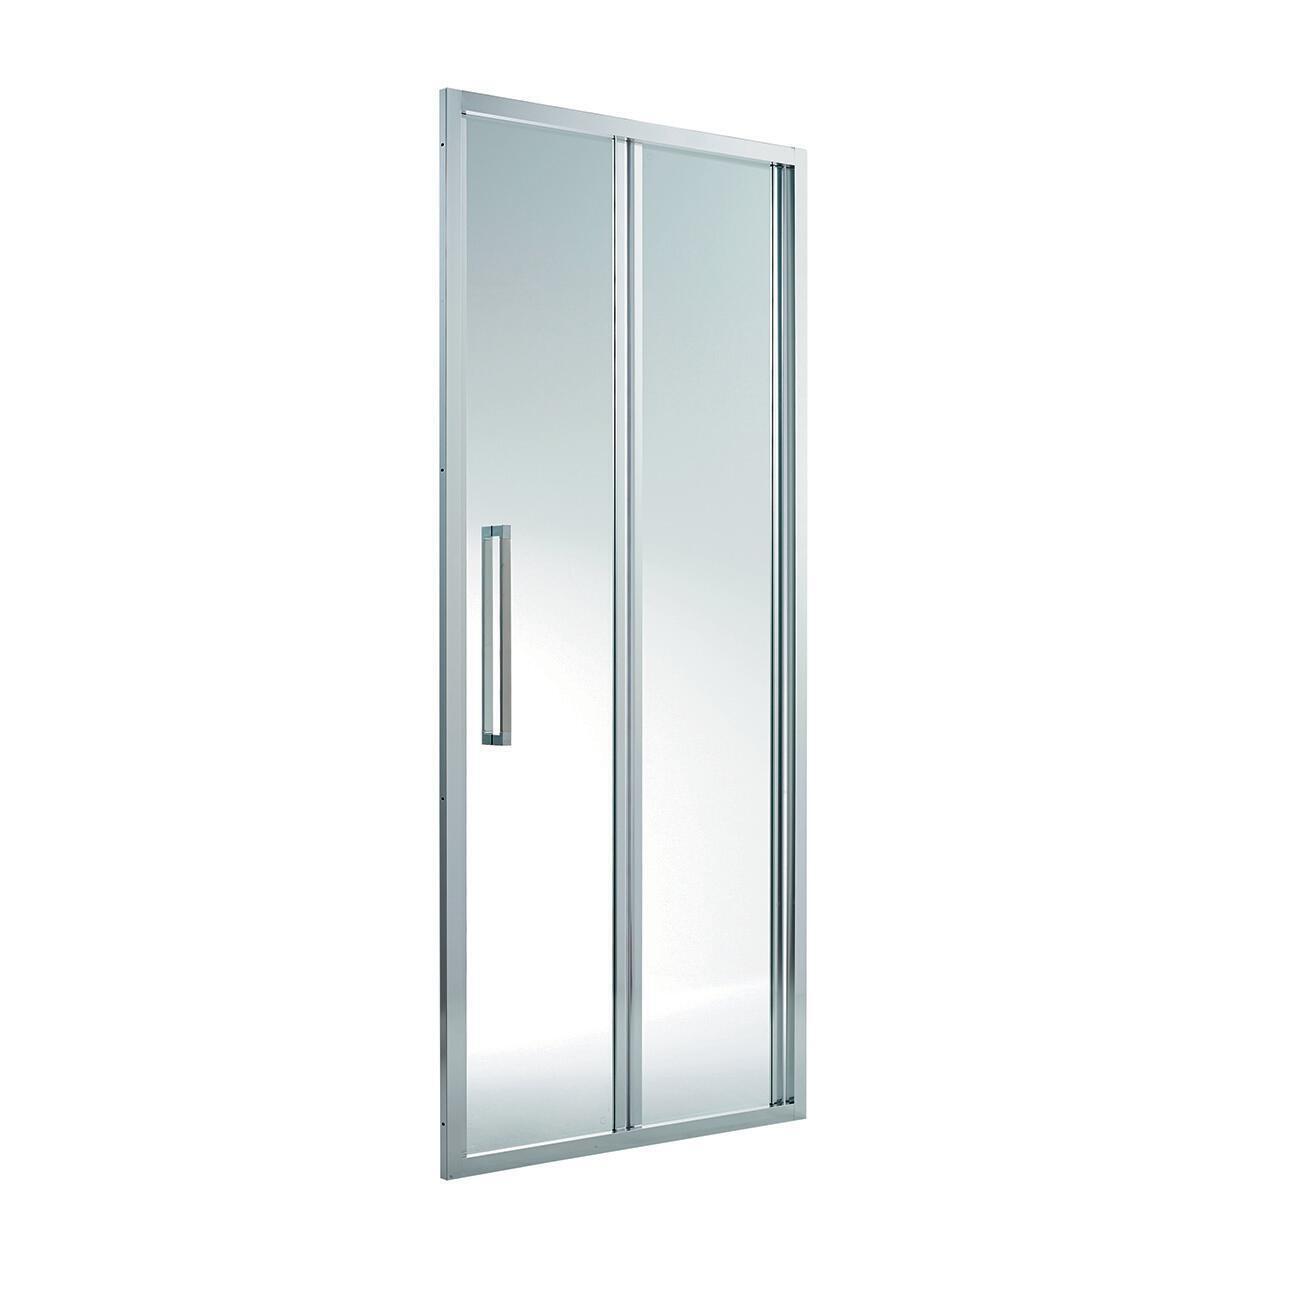 Porta doccia pieghevole Purity 170 cm, H 195 cm in vetro, spessore 6 mm trasparente cromato - 3